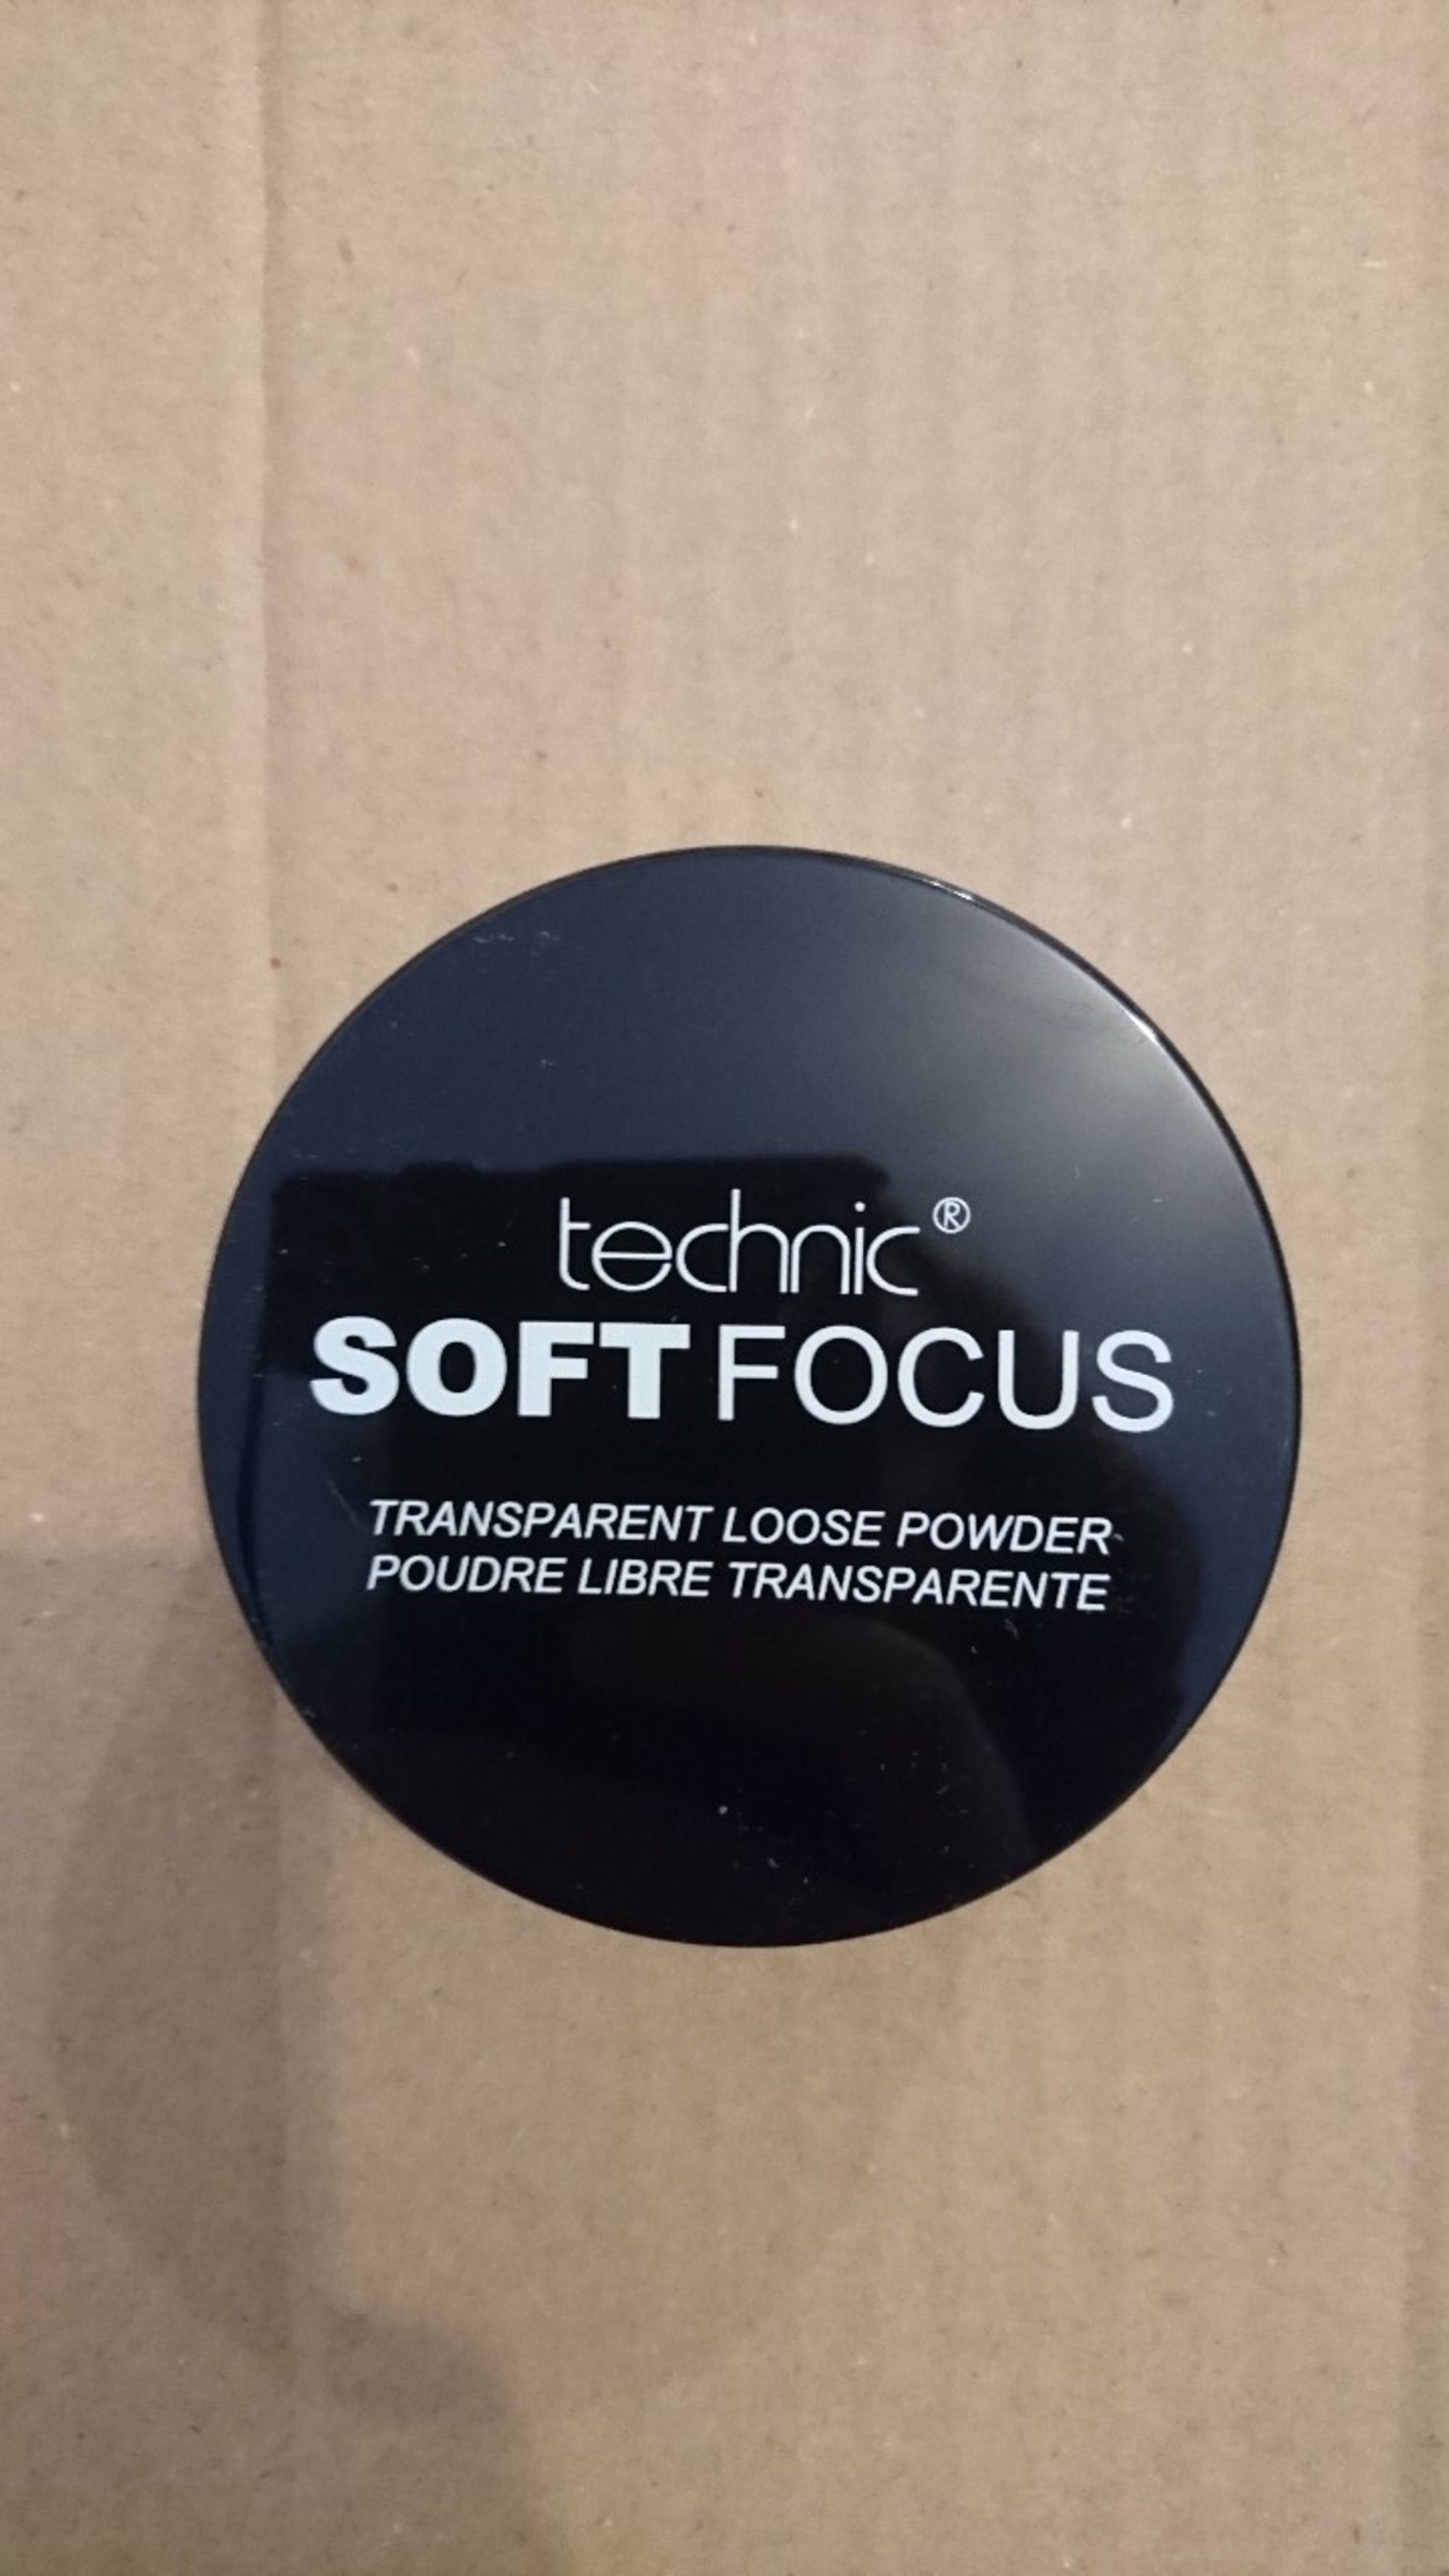 TECHNIC - Soft focus - Poudre libre transparente 